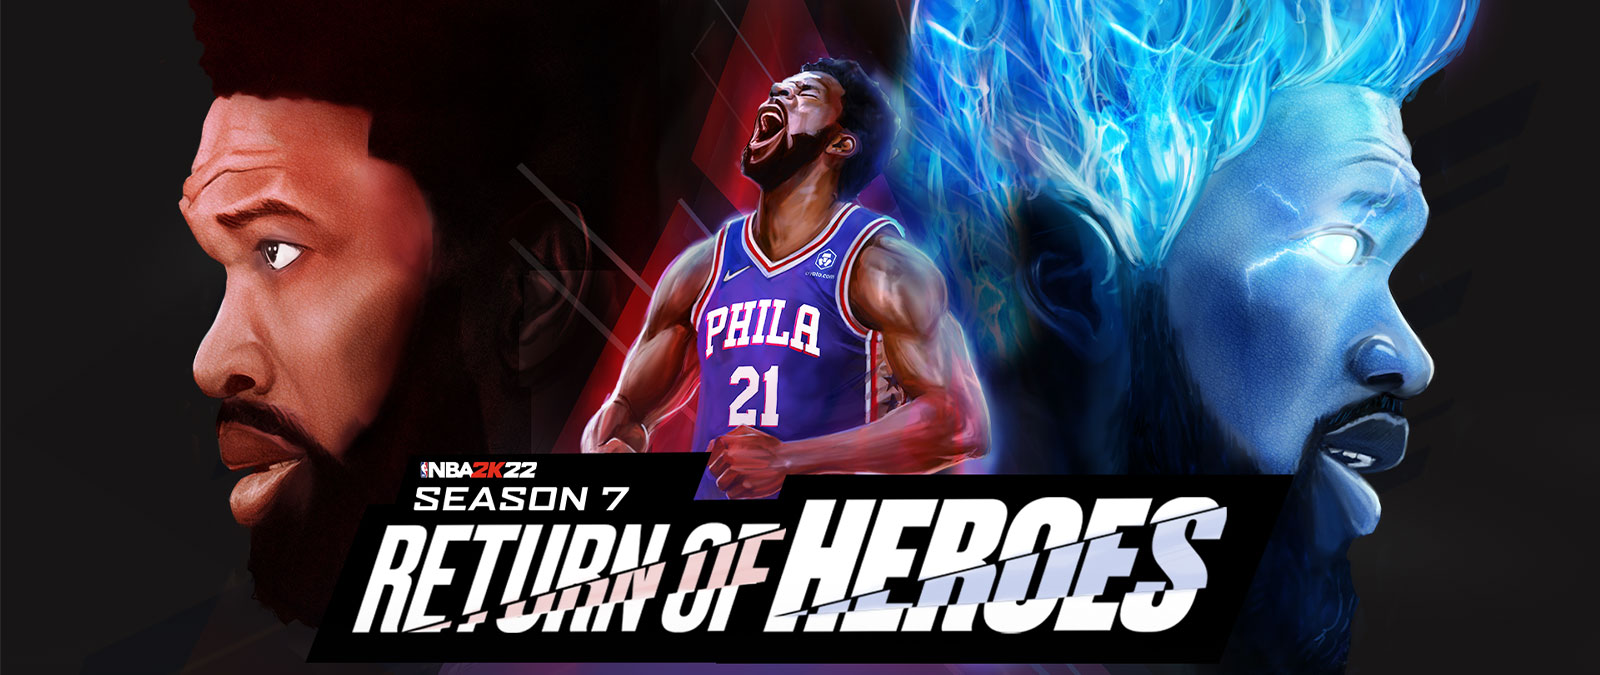 NBA 2K22, sezon 7., Powrót Herosów, zawodnik Filadelfii krzyczy w stronę nieba i otacza się niebieskimi płomieniami.